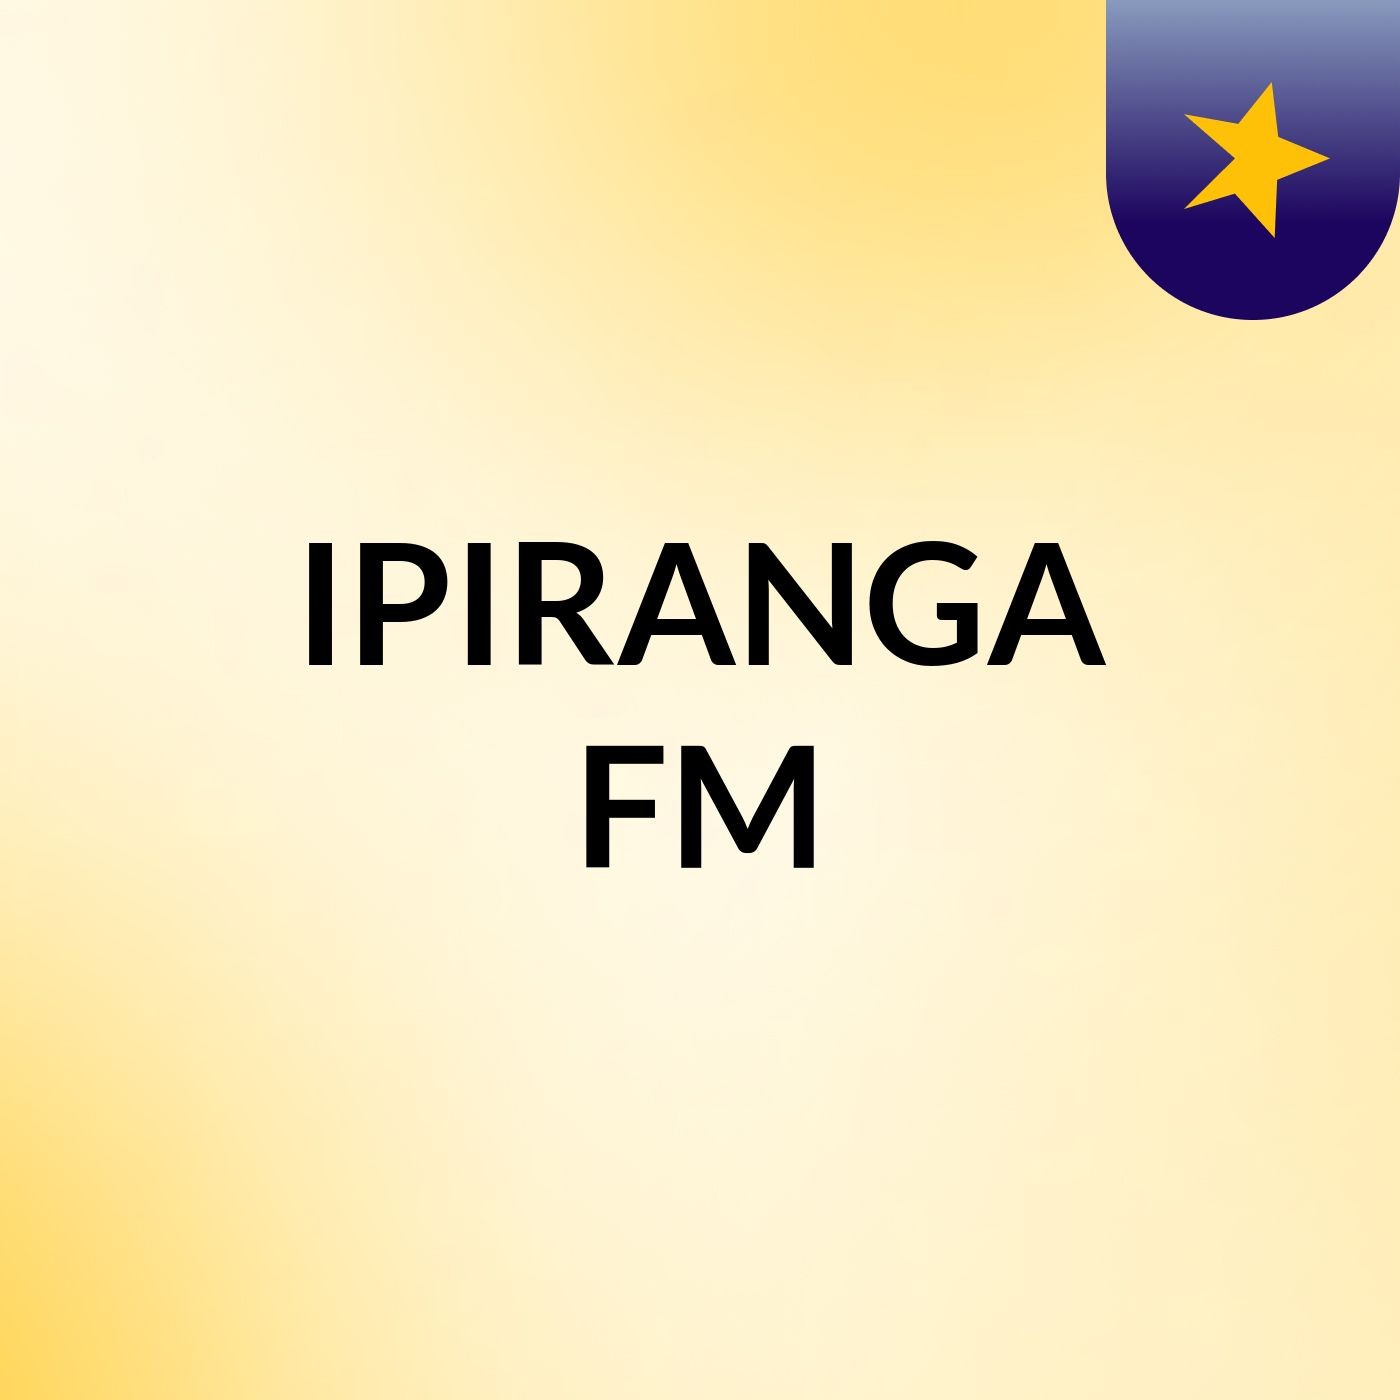 IPIRANGA FM